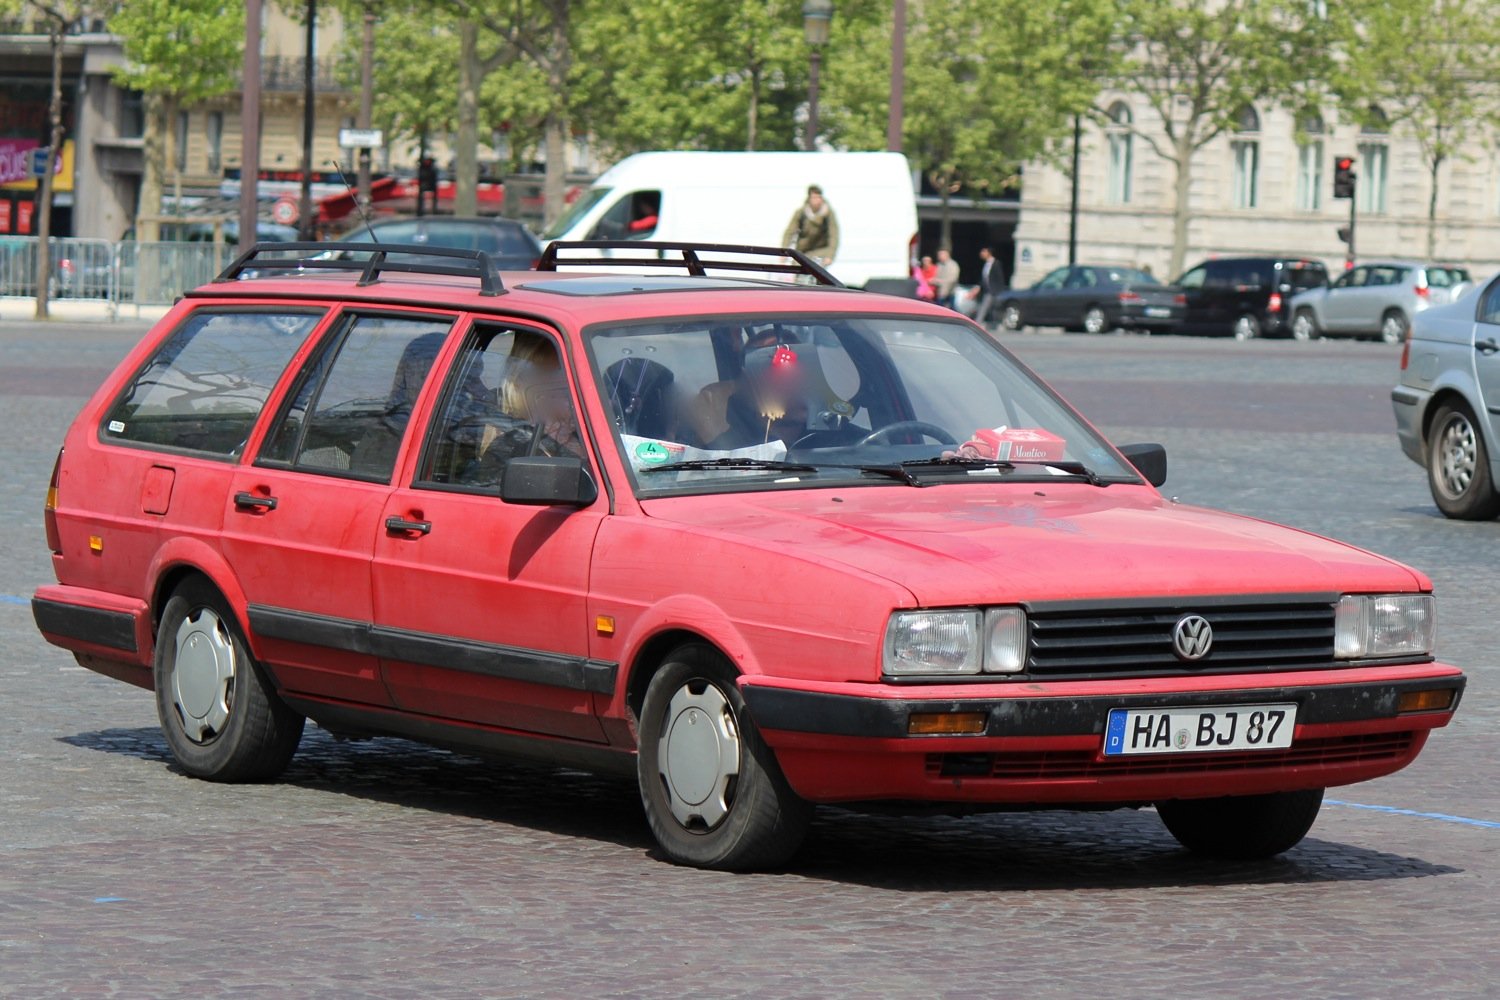 Фольксваген пассат универсал 1. Volkswagen Passat b2 седан. Фольксваген Пассат в2 хэтчбек. VW Passat b2 хэтчбек. Volkswagen Passat b2 универсал.